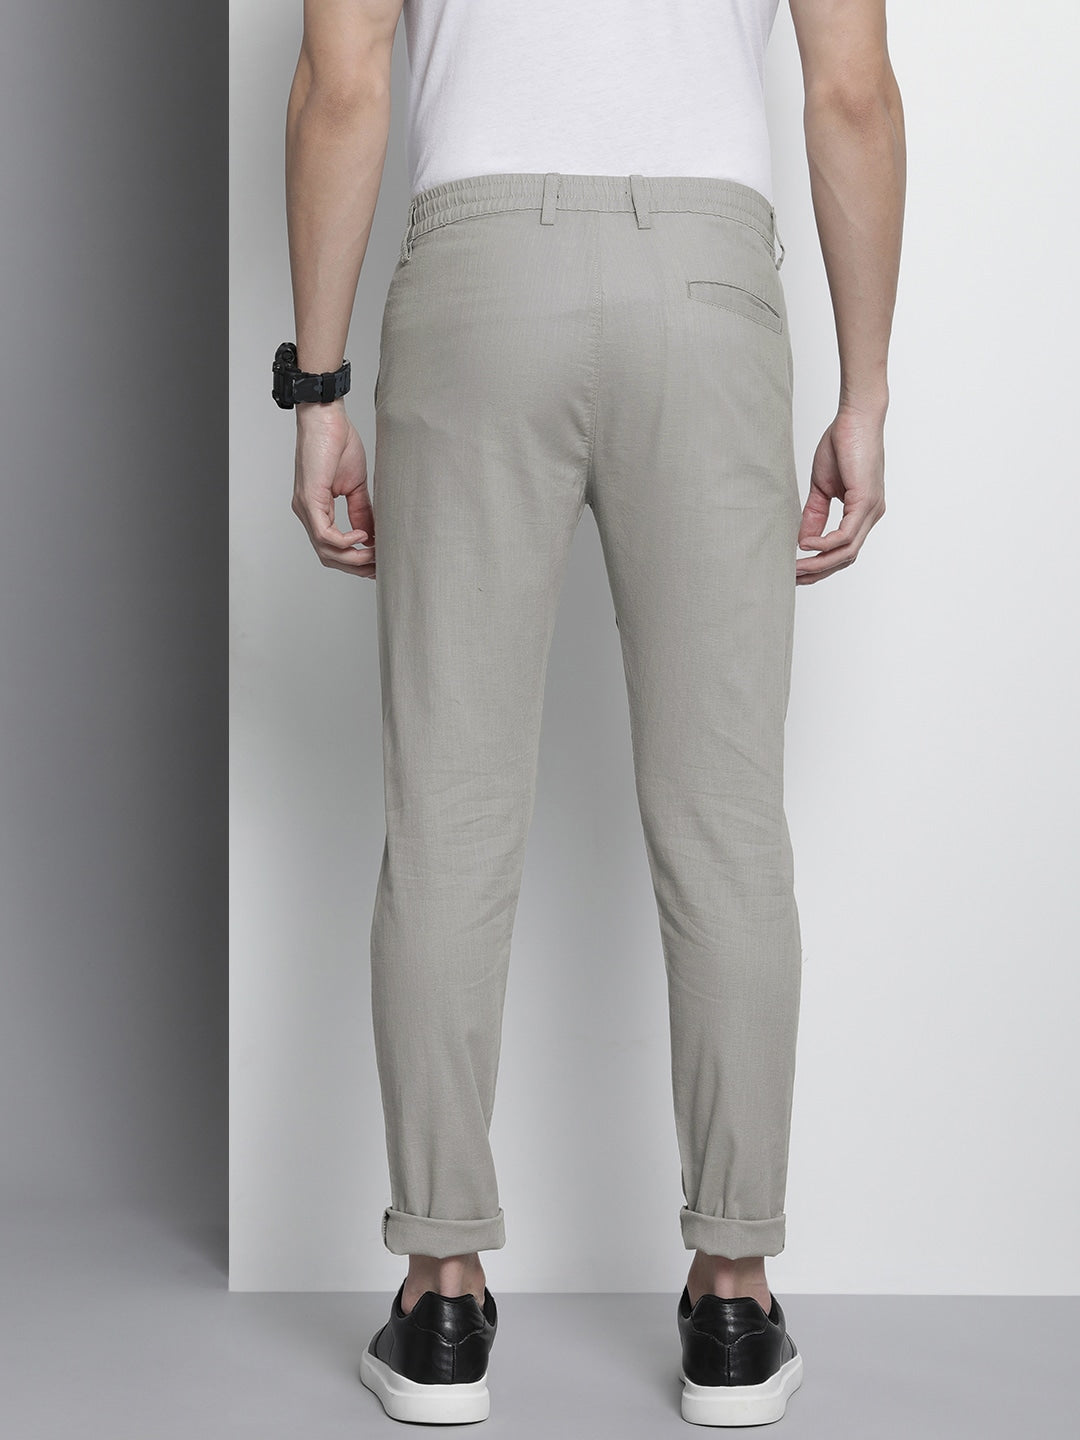 COCOS men's linen pants | Manufacture de Lin